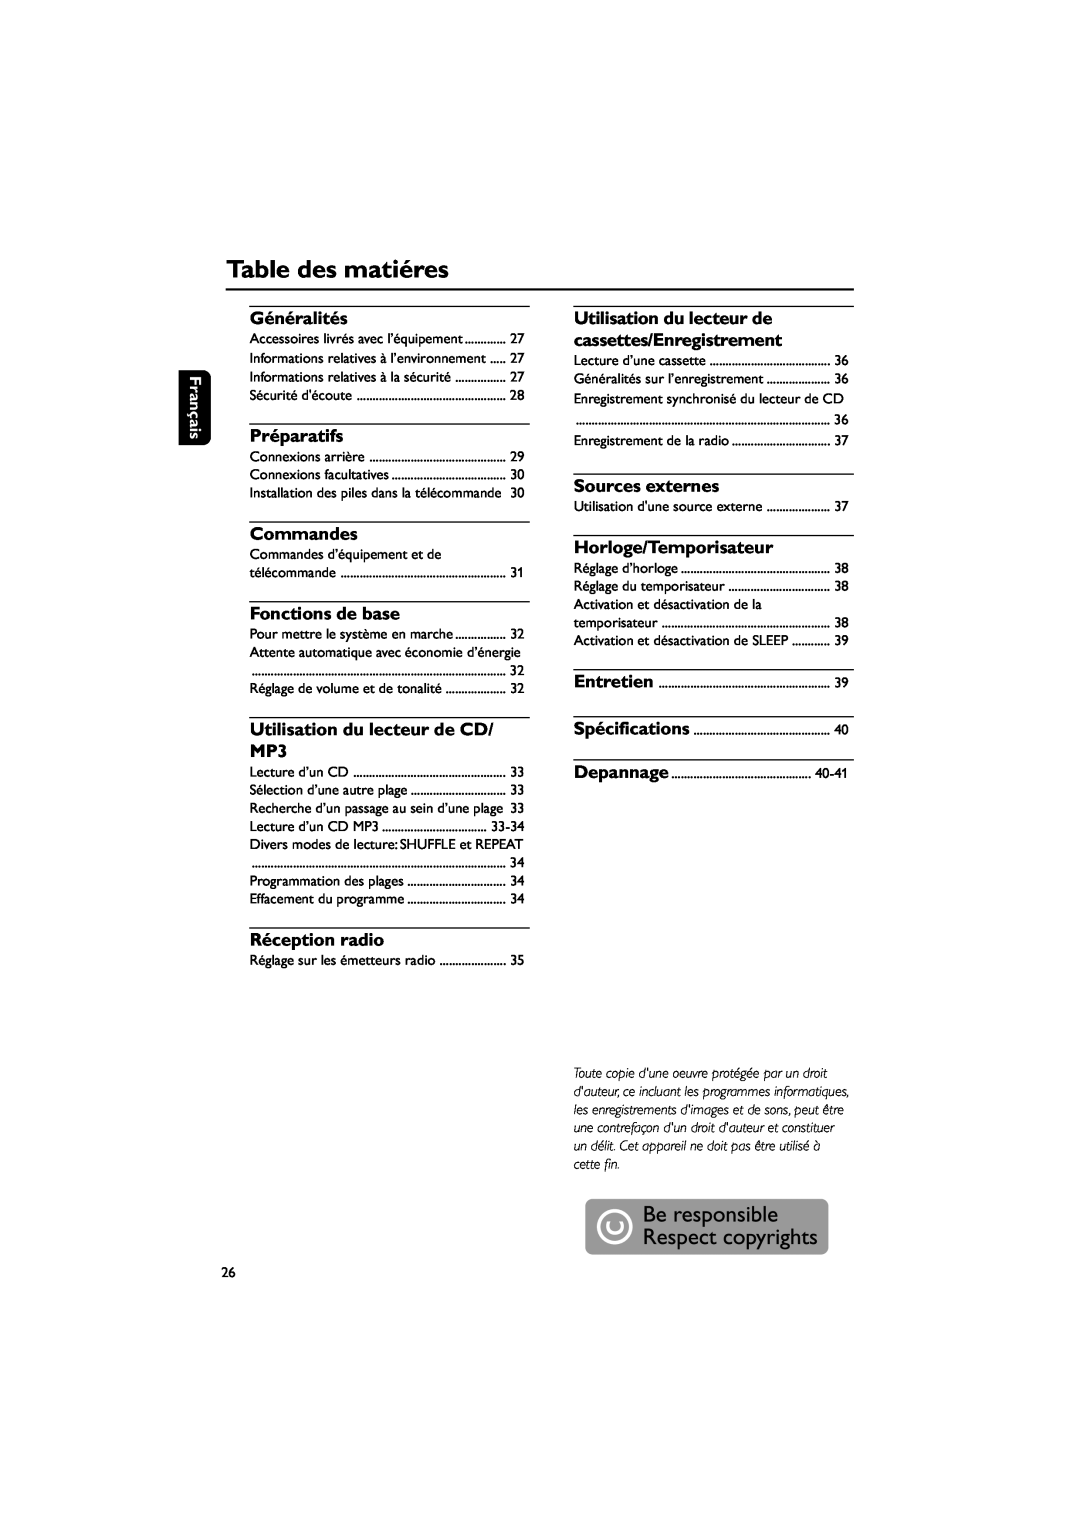 Philips FWM143/37 Table des matiéres, Généralités, Préparatifs, Utilisation du lecteur de, cassettes/Enregistrement 